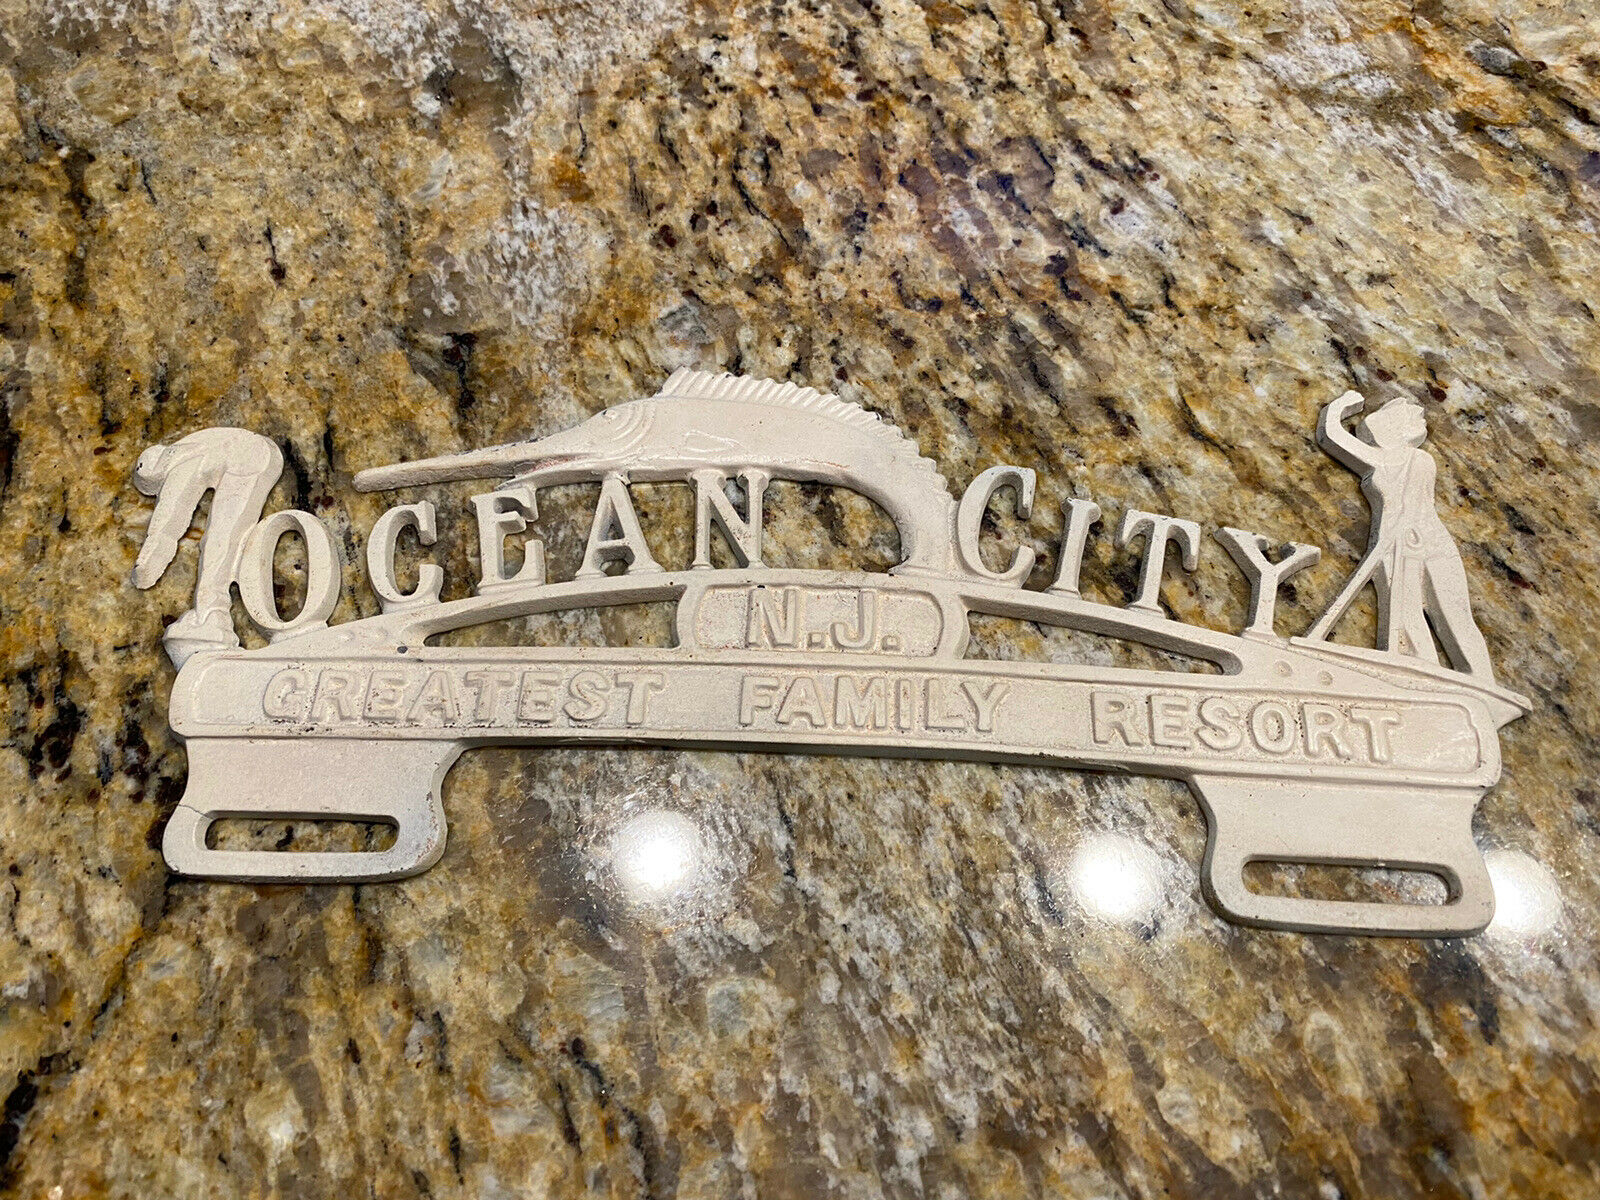 Rare Vintage Ocean City Nj Great Family Resort License Plate Frame Topper